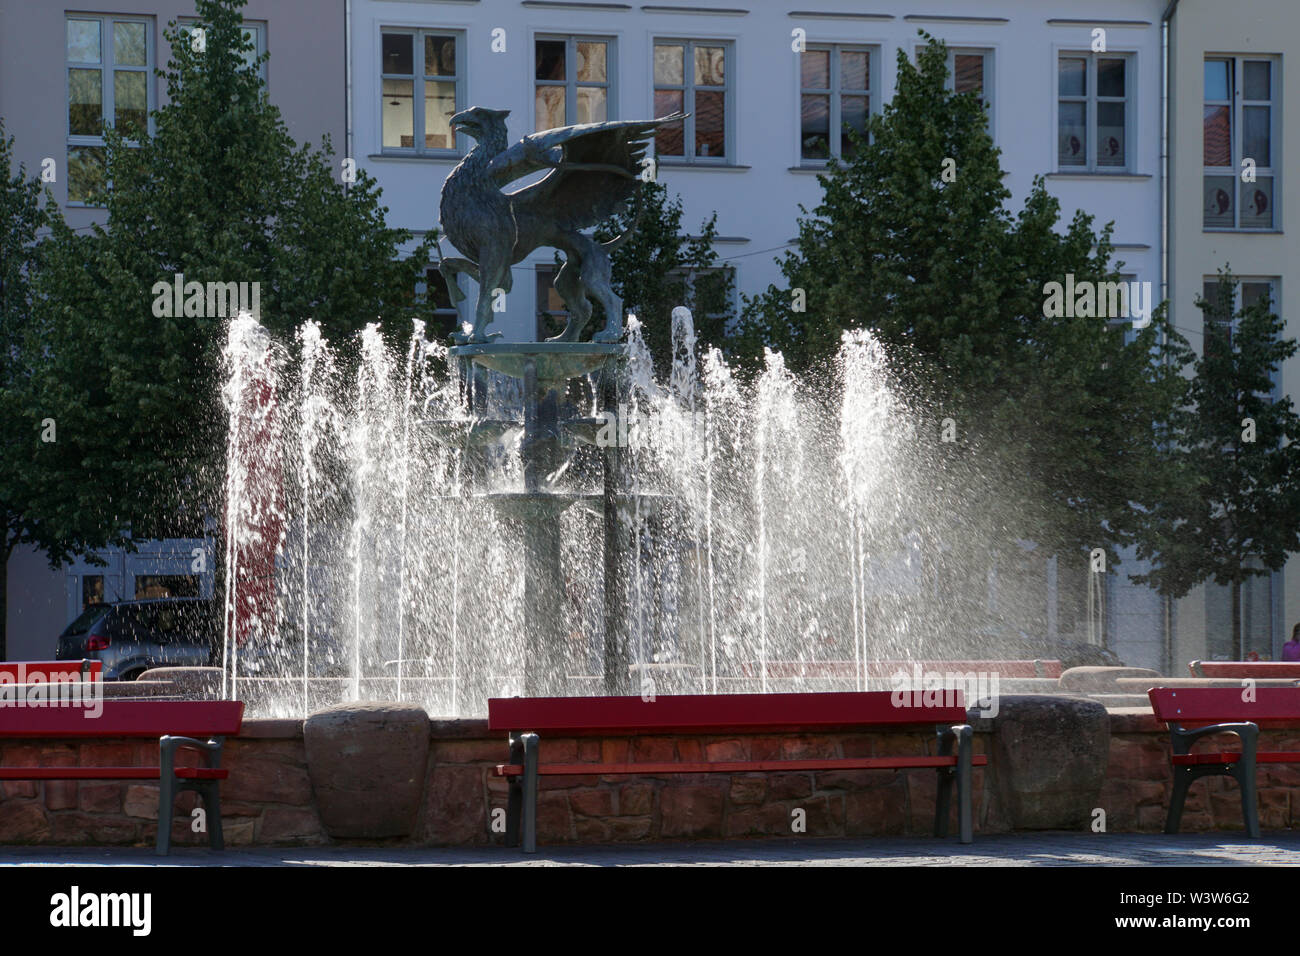 Greifenbrunnen auf dem Marktplatz, Hansestadt Anklam, Mecklenburg-Vorpommern, Deutschland Stock Photo